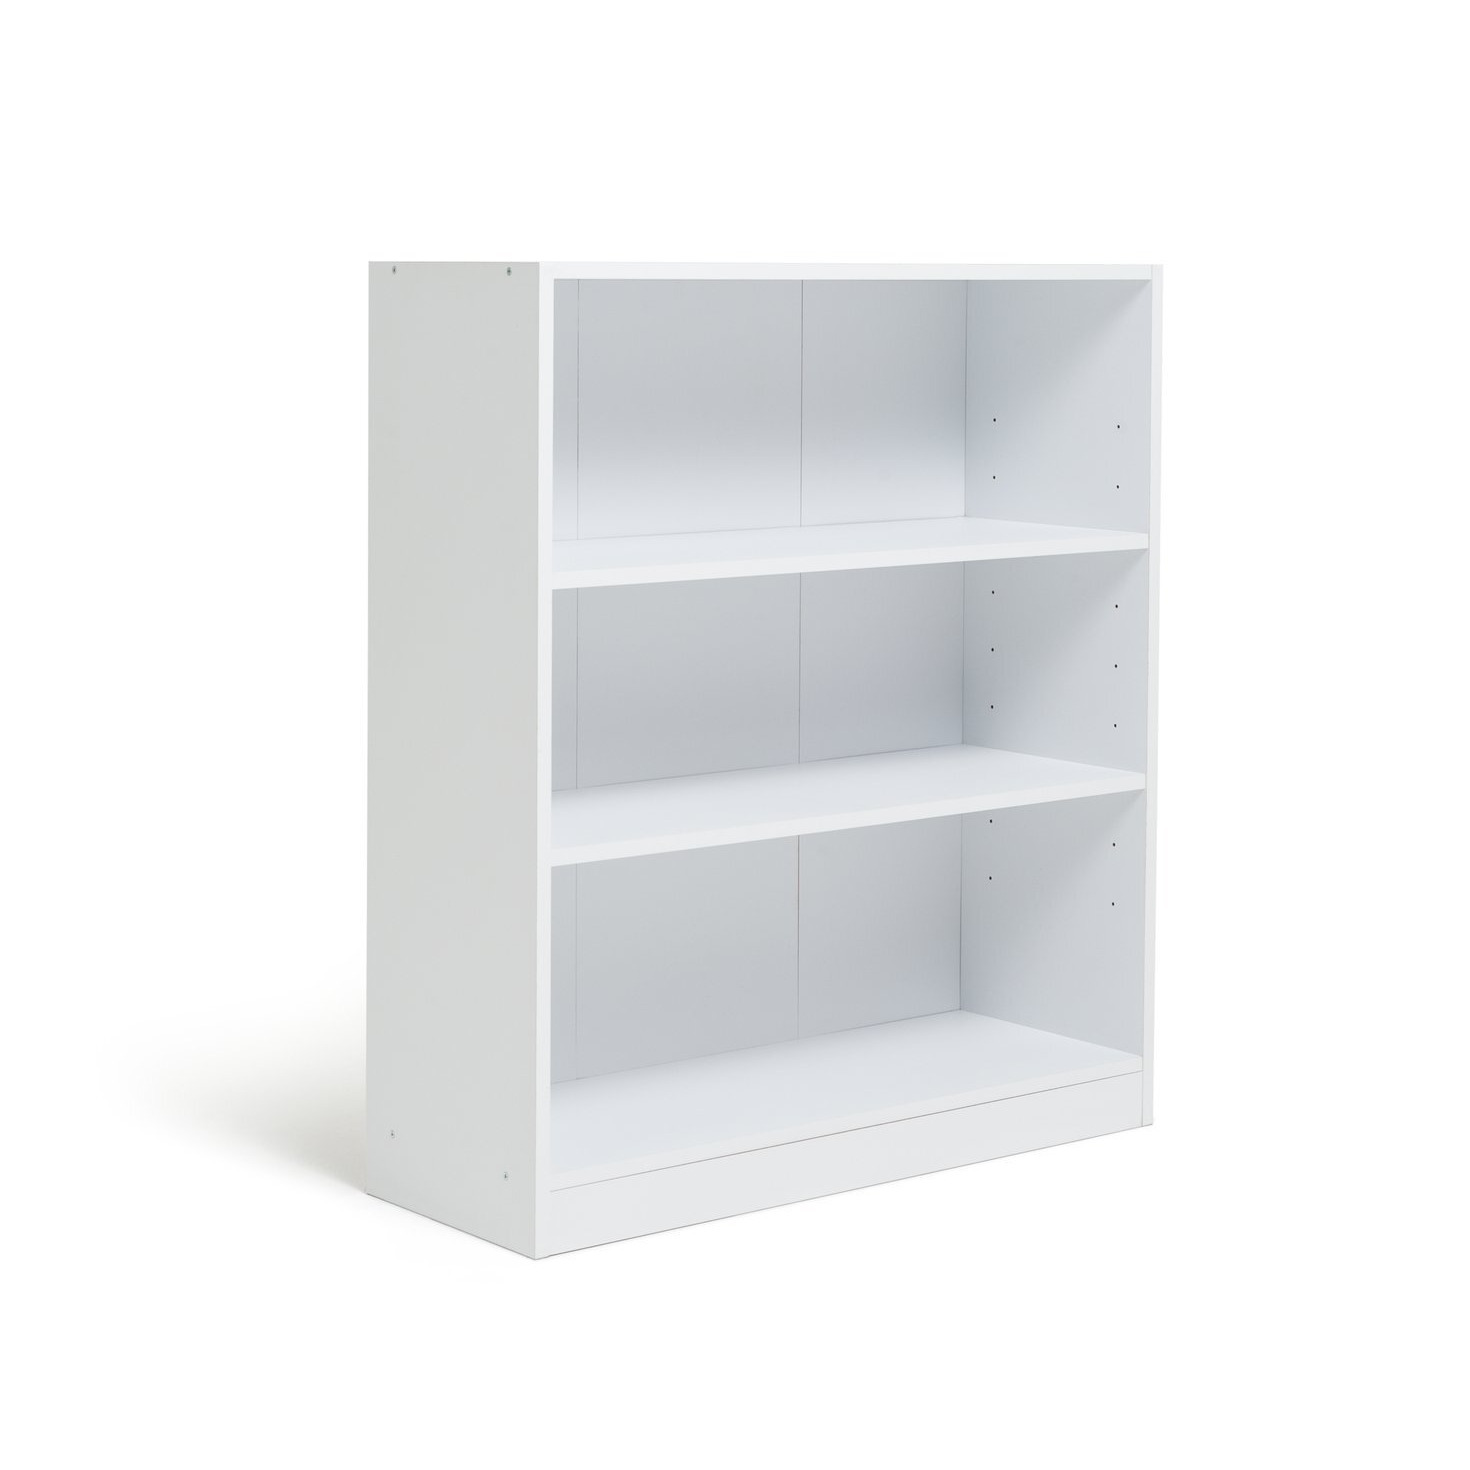 Argos Home Malibu Short Wood Effect Bookcase - White - image 1